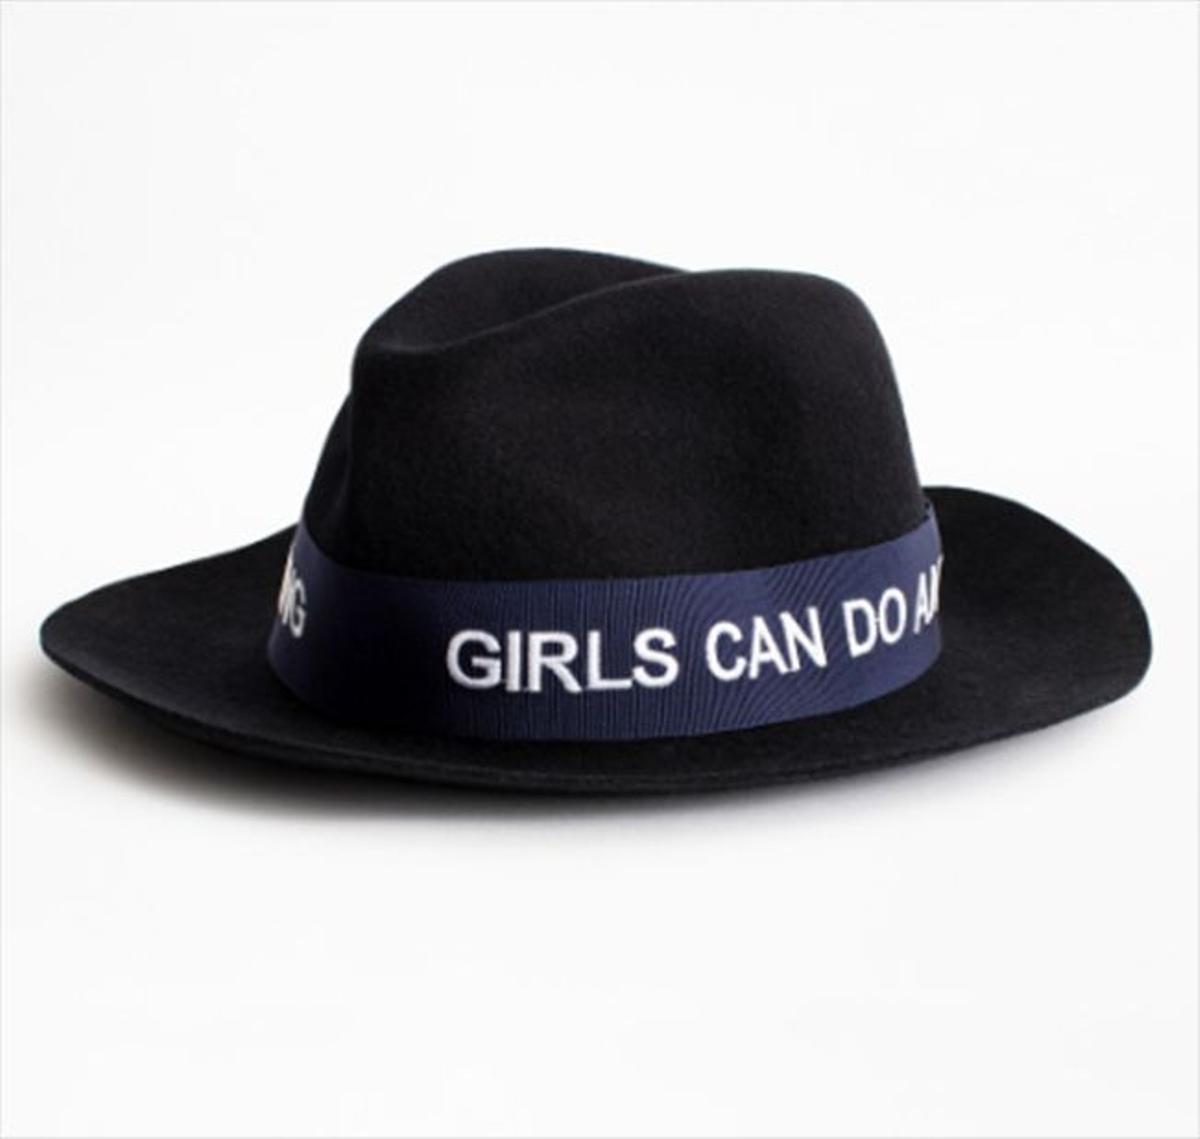 Sombrero con mensaje feminista